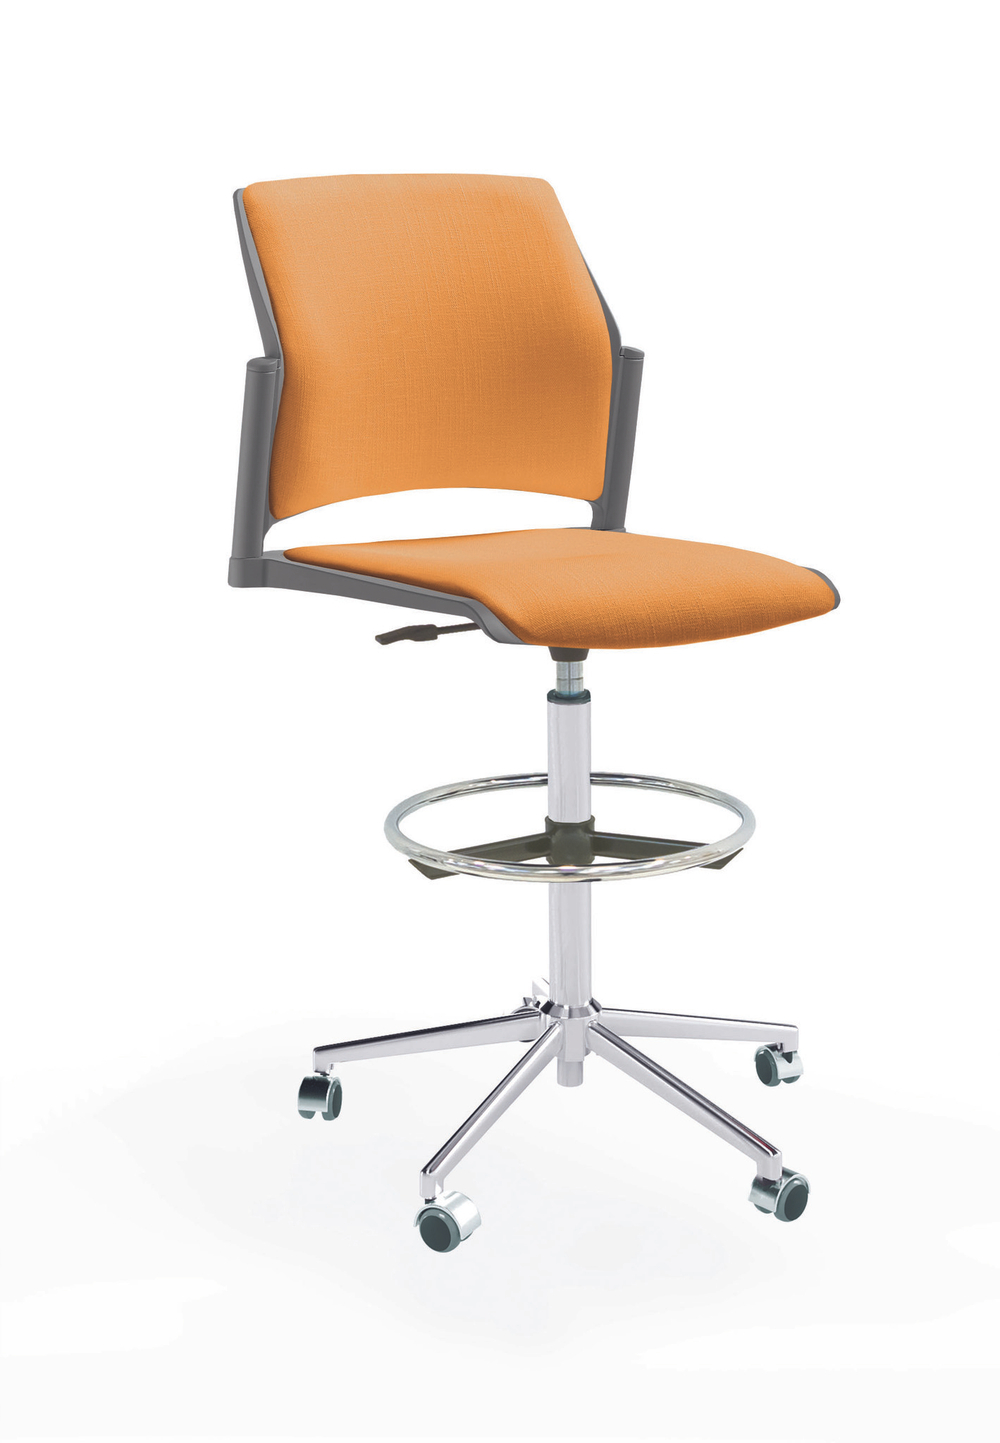 Кресло Rewind каркас хром, пластик серый, база стальная хромированная, без подлокотников, сиденье и спинка оранжевые